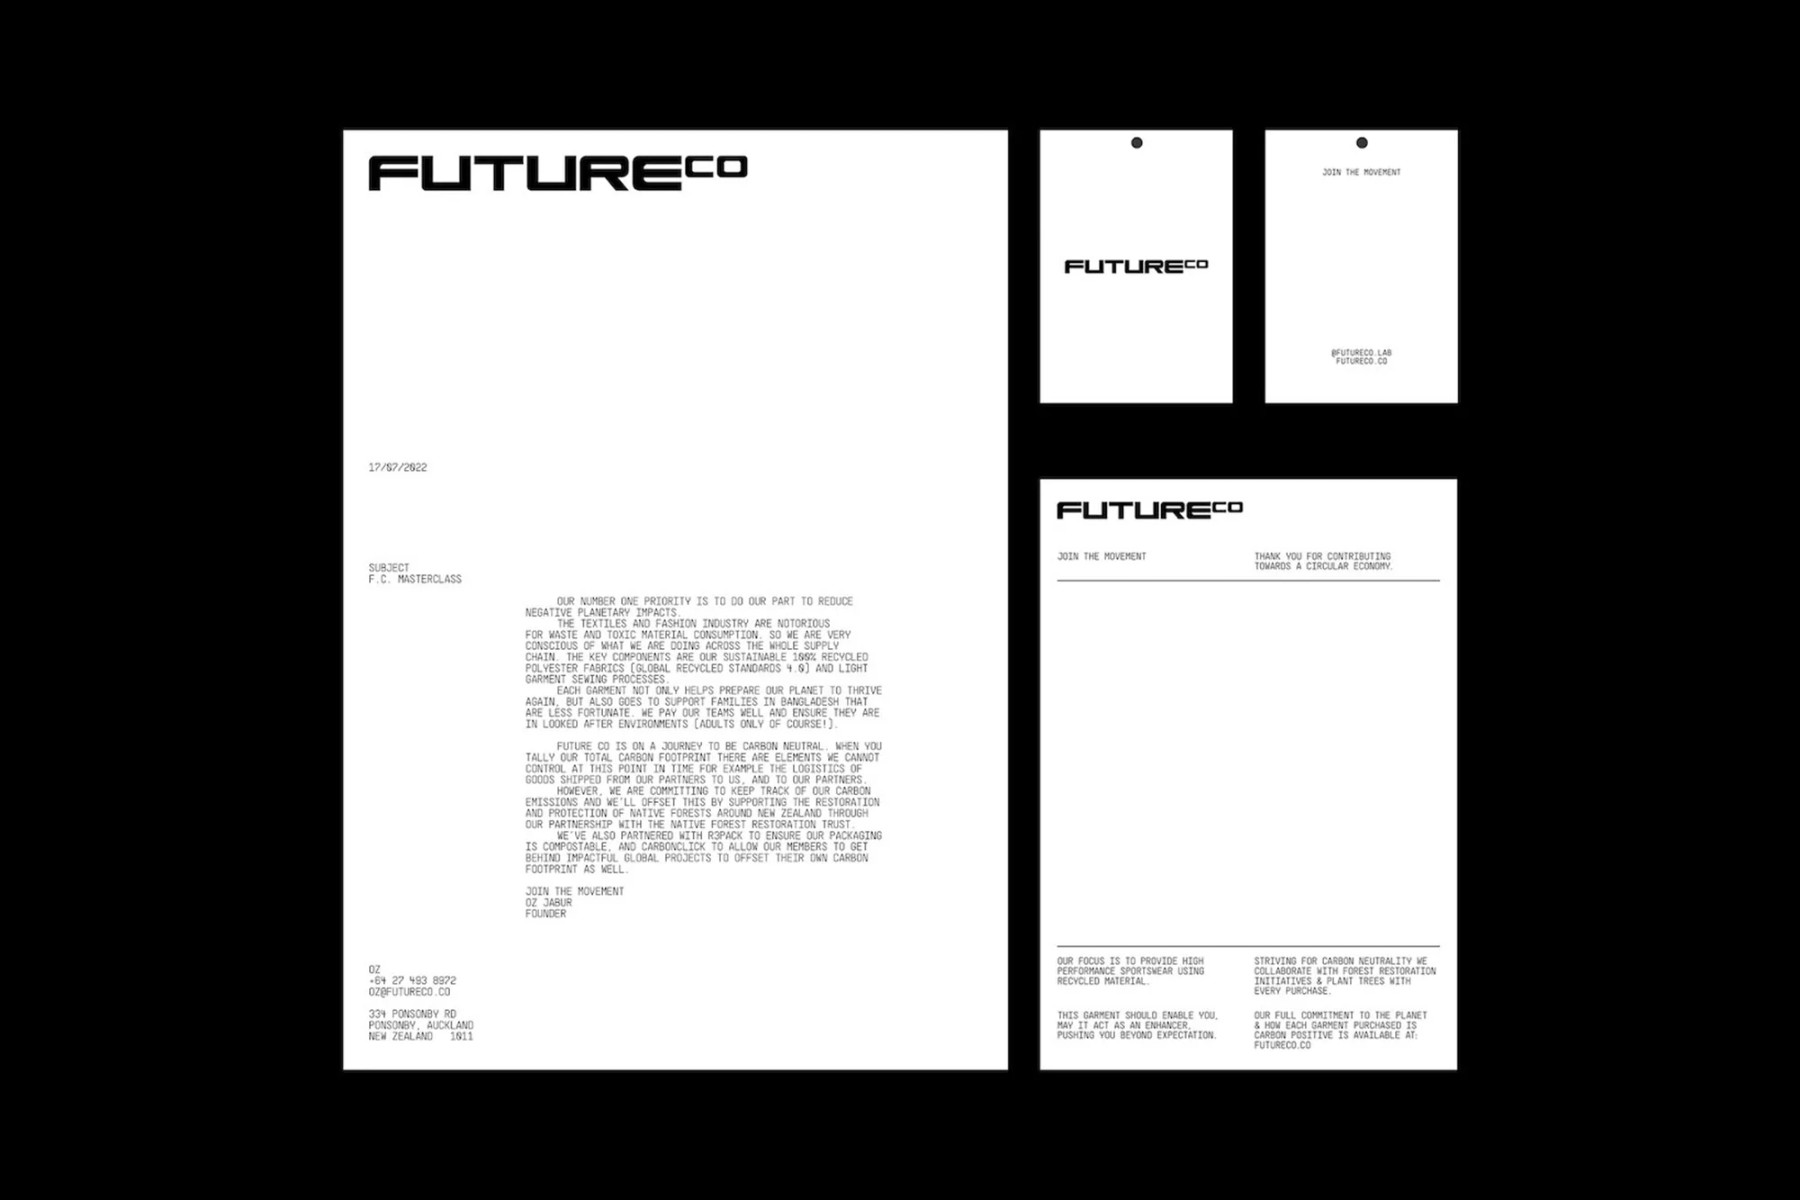 futureco-platform-1-bc9e4.webp